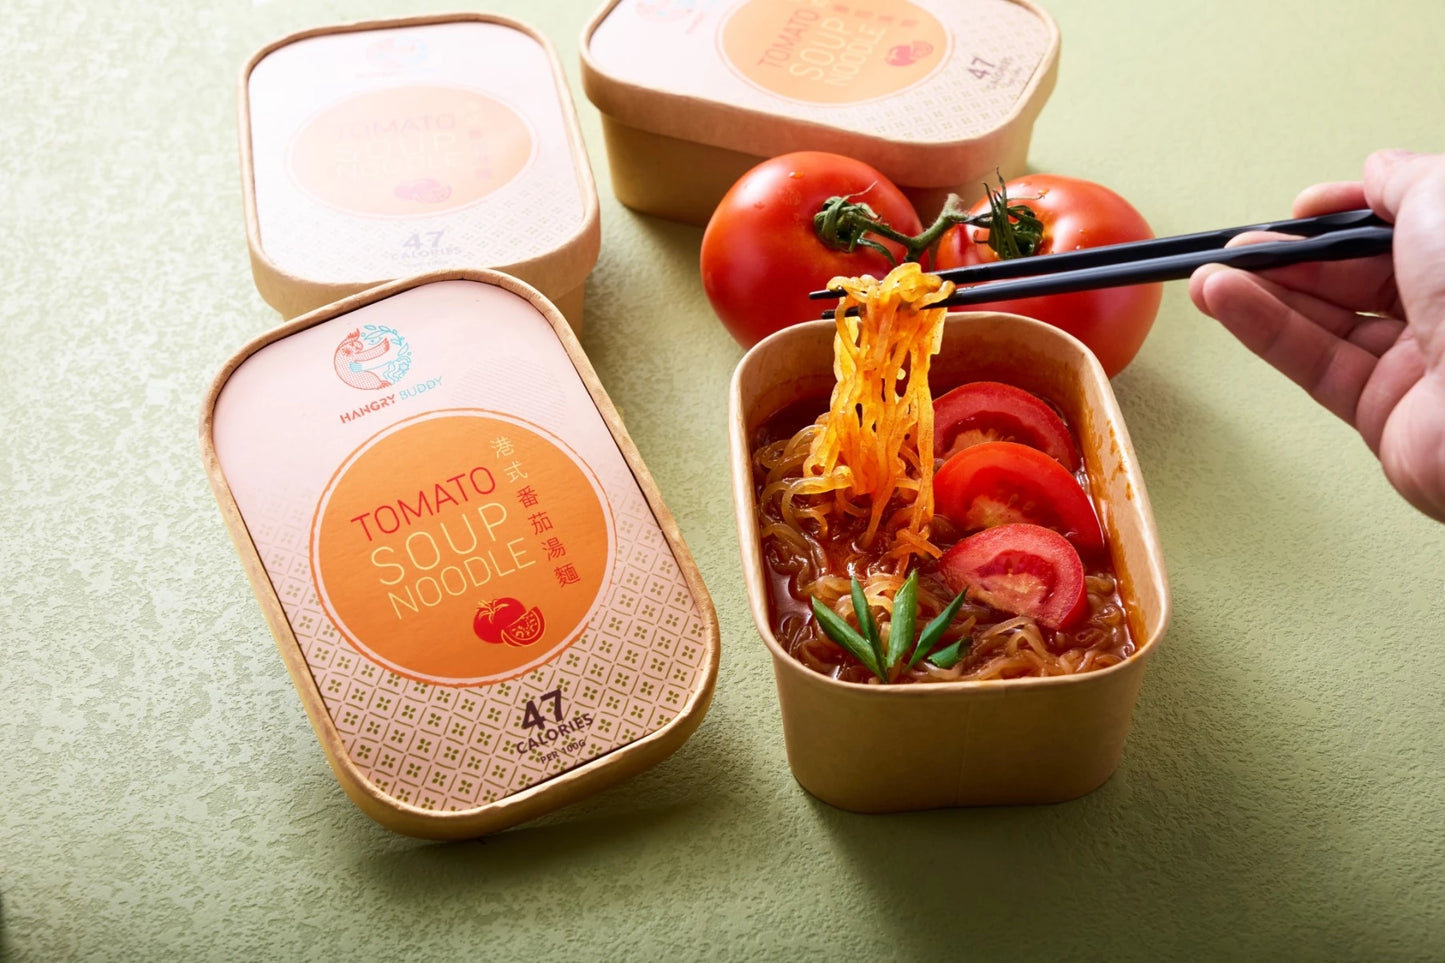 Tomato Soup Konjac Noodle 港式番茄湯蒟蒻麵